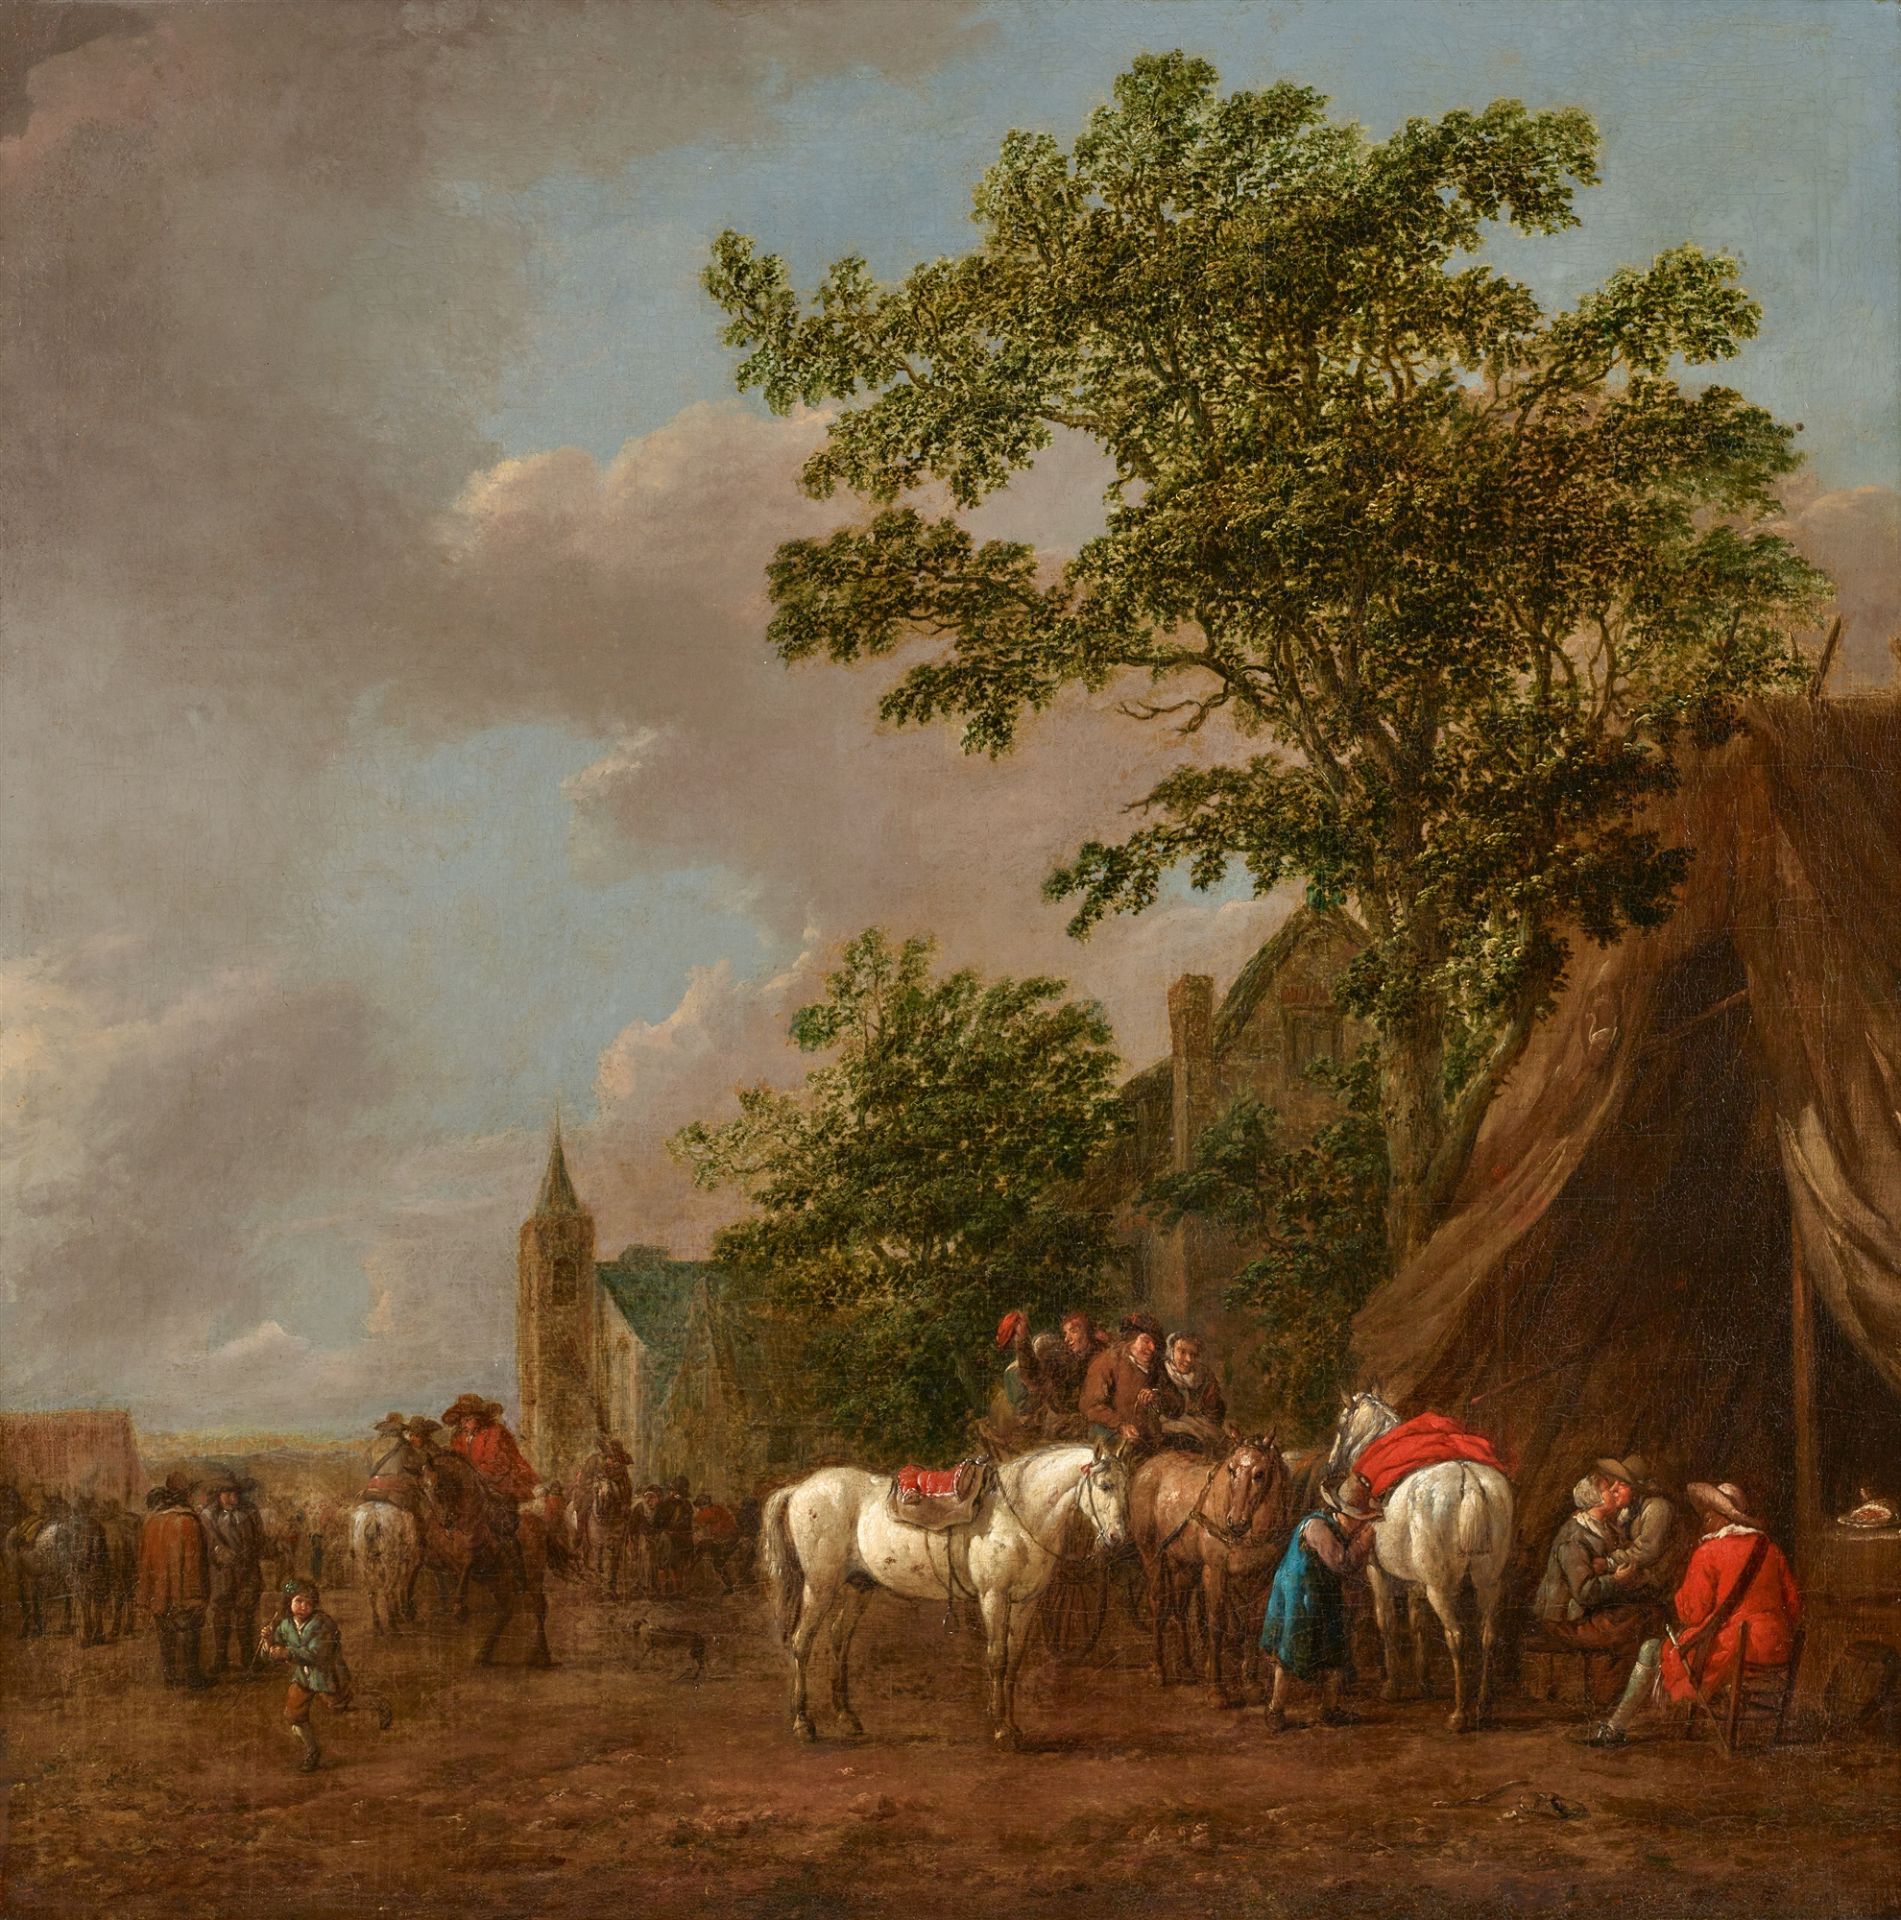 Barent Gael, Horsemen at an Inn in a Landscape